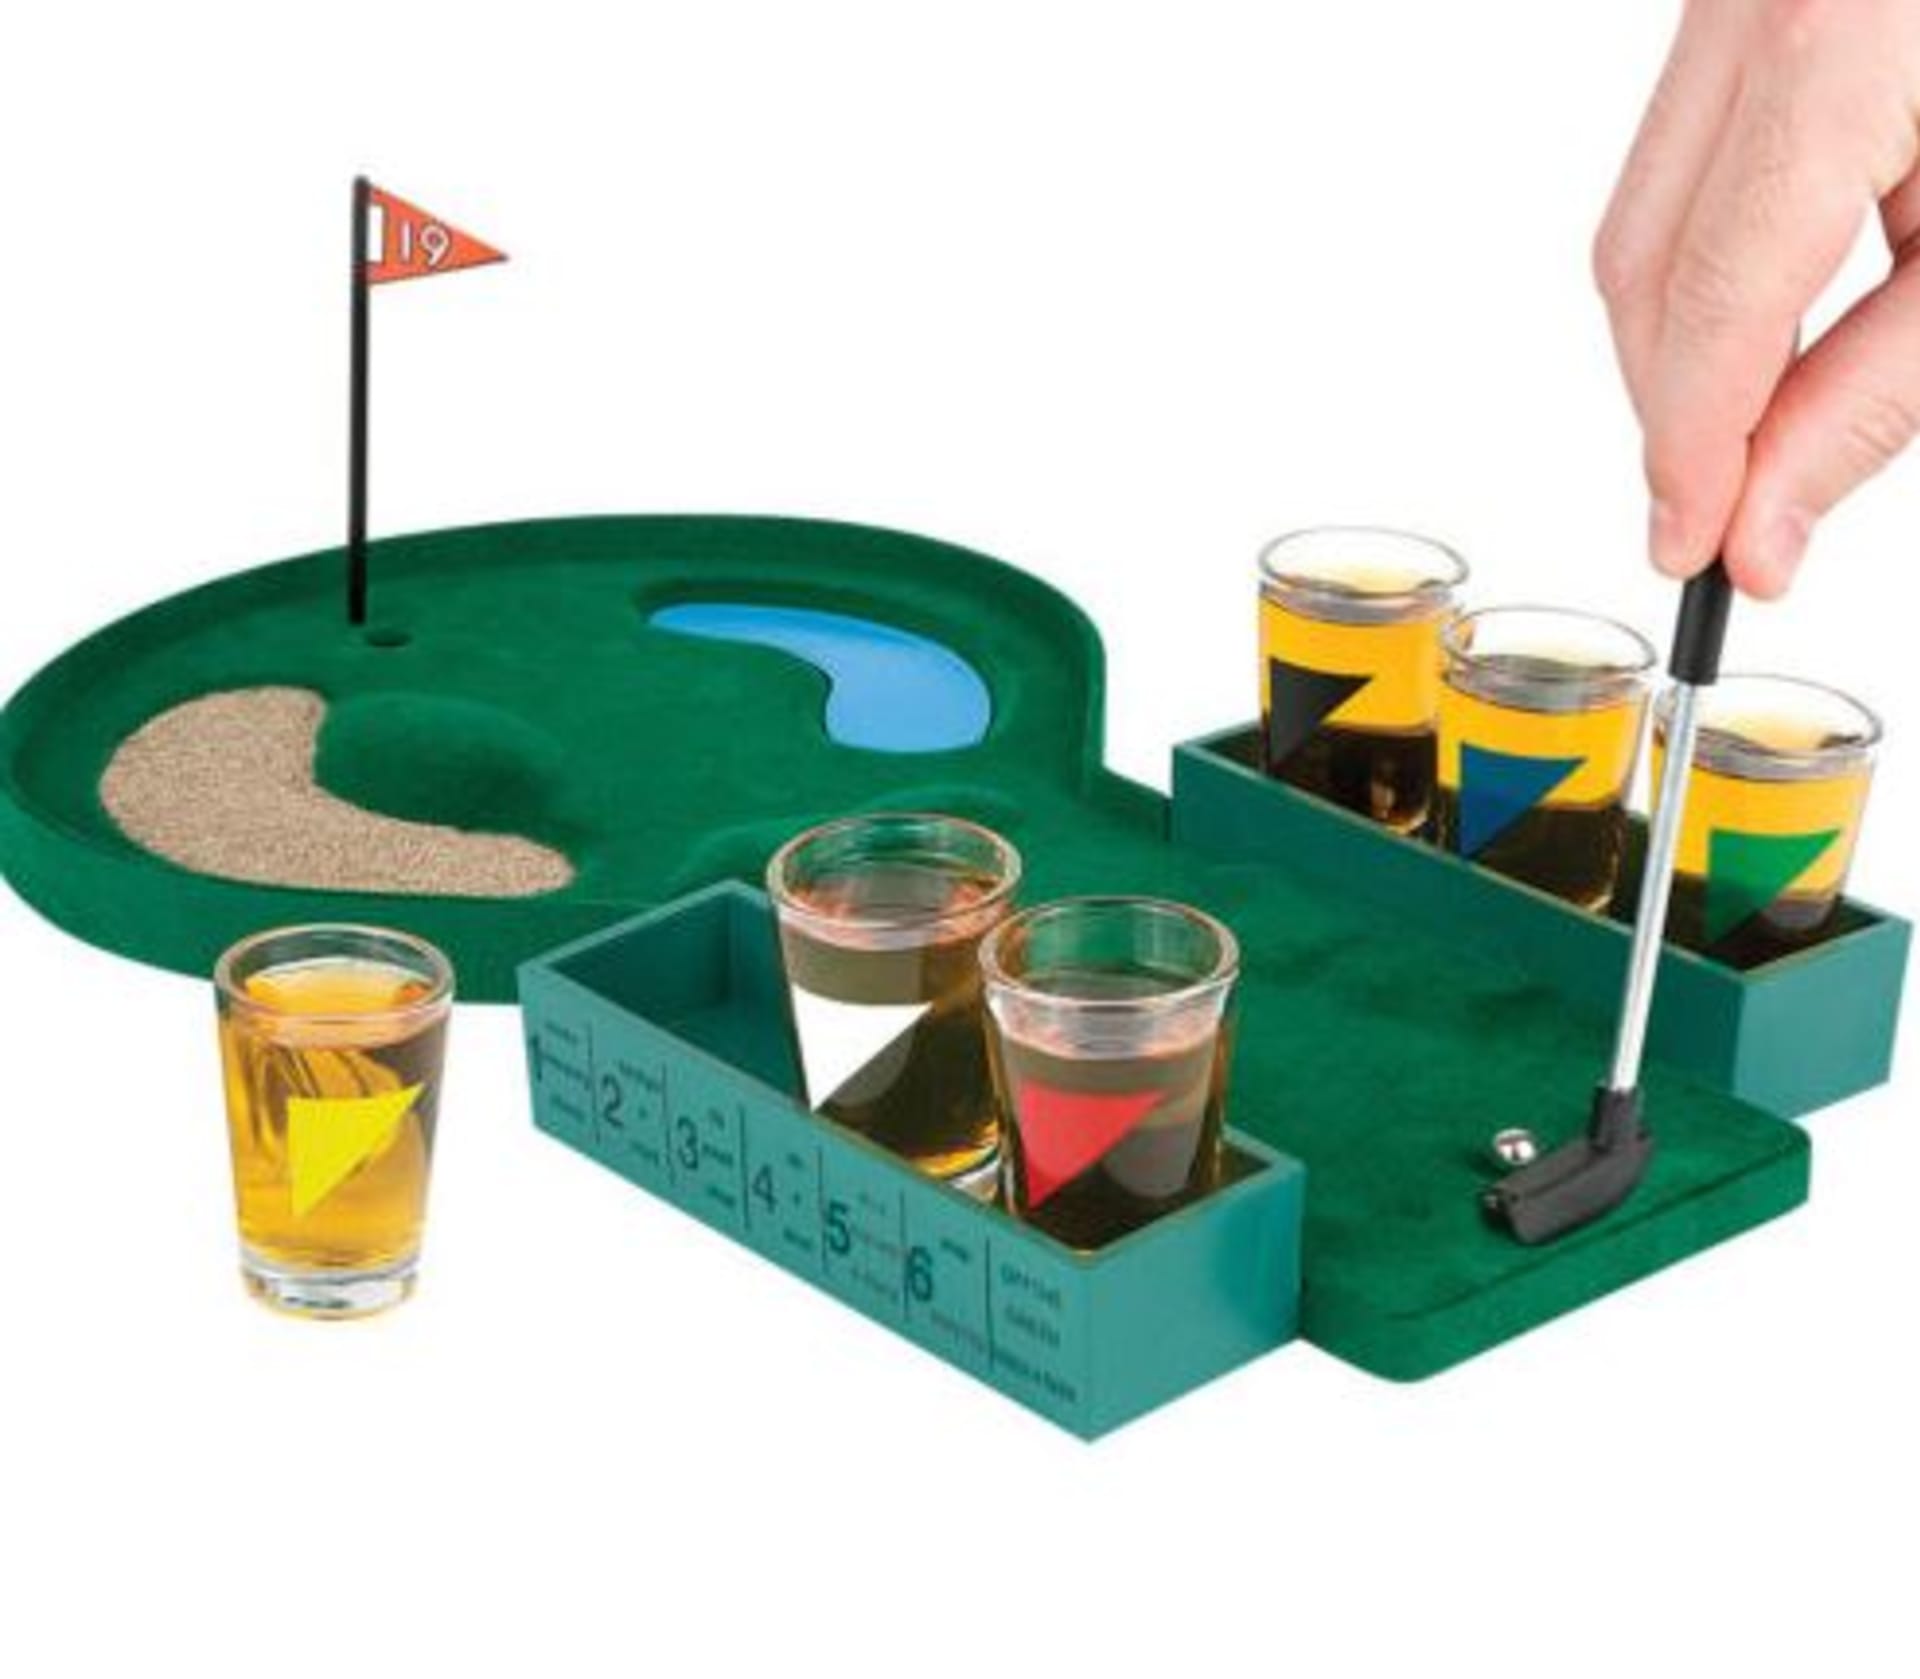 Skvělá nápad pro milovníky golfu a dobrého alkoholu